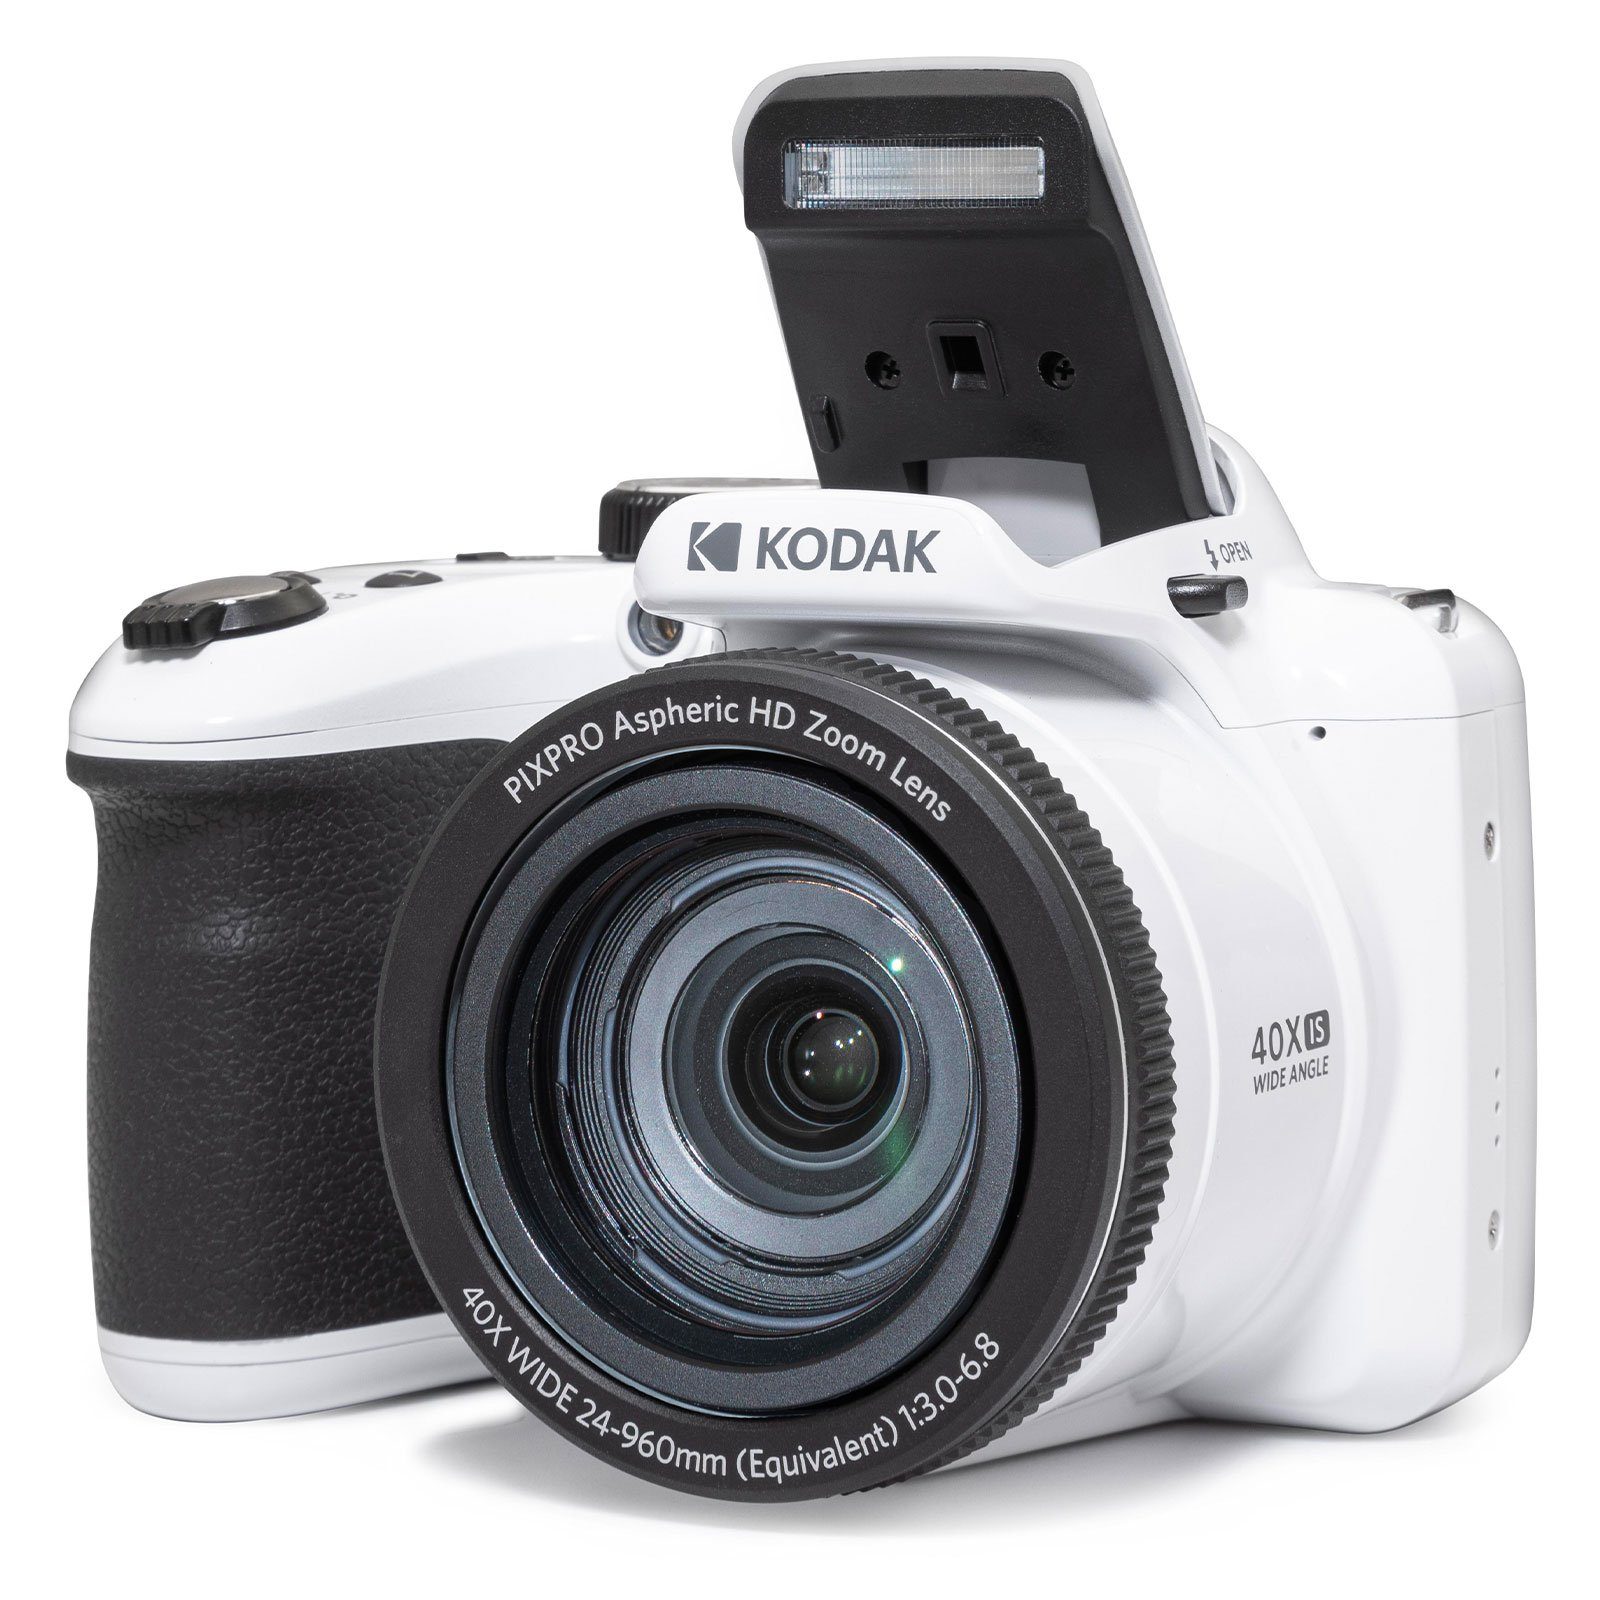 Kompaktkamera (20,68 Weiß Kodak MP, AZ405 Nahaufnahmen) Digitalkamera,